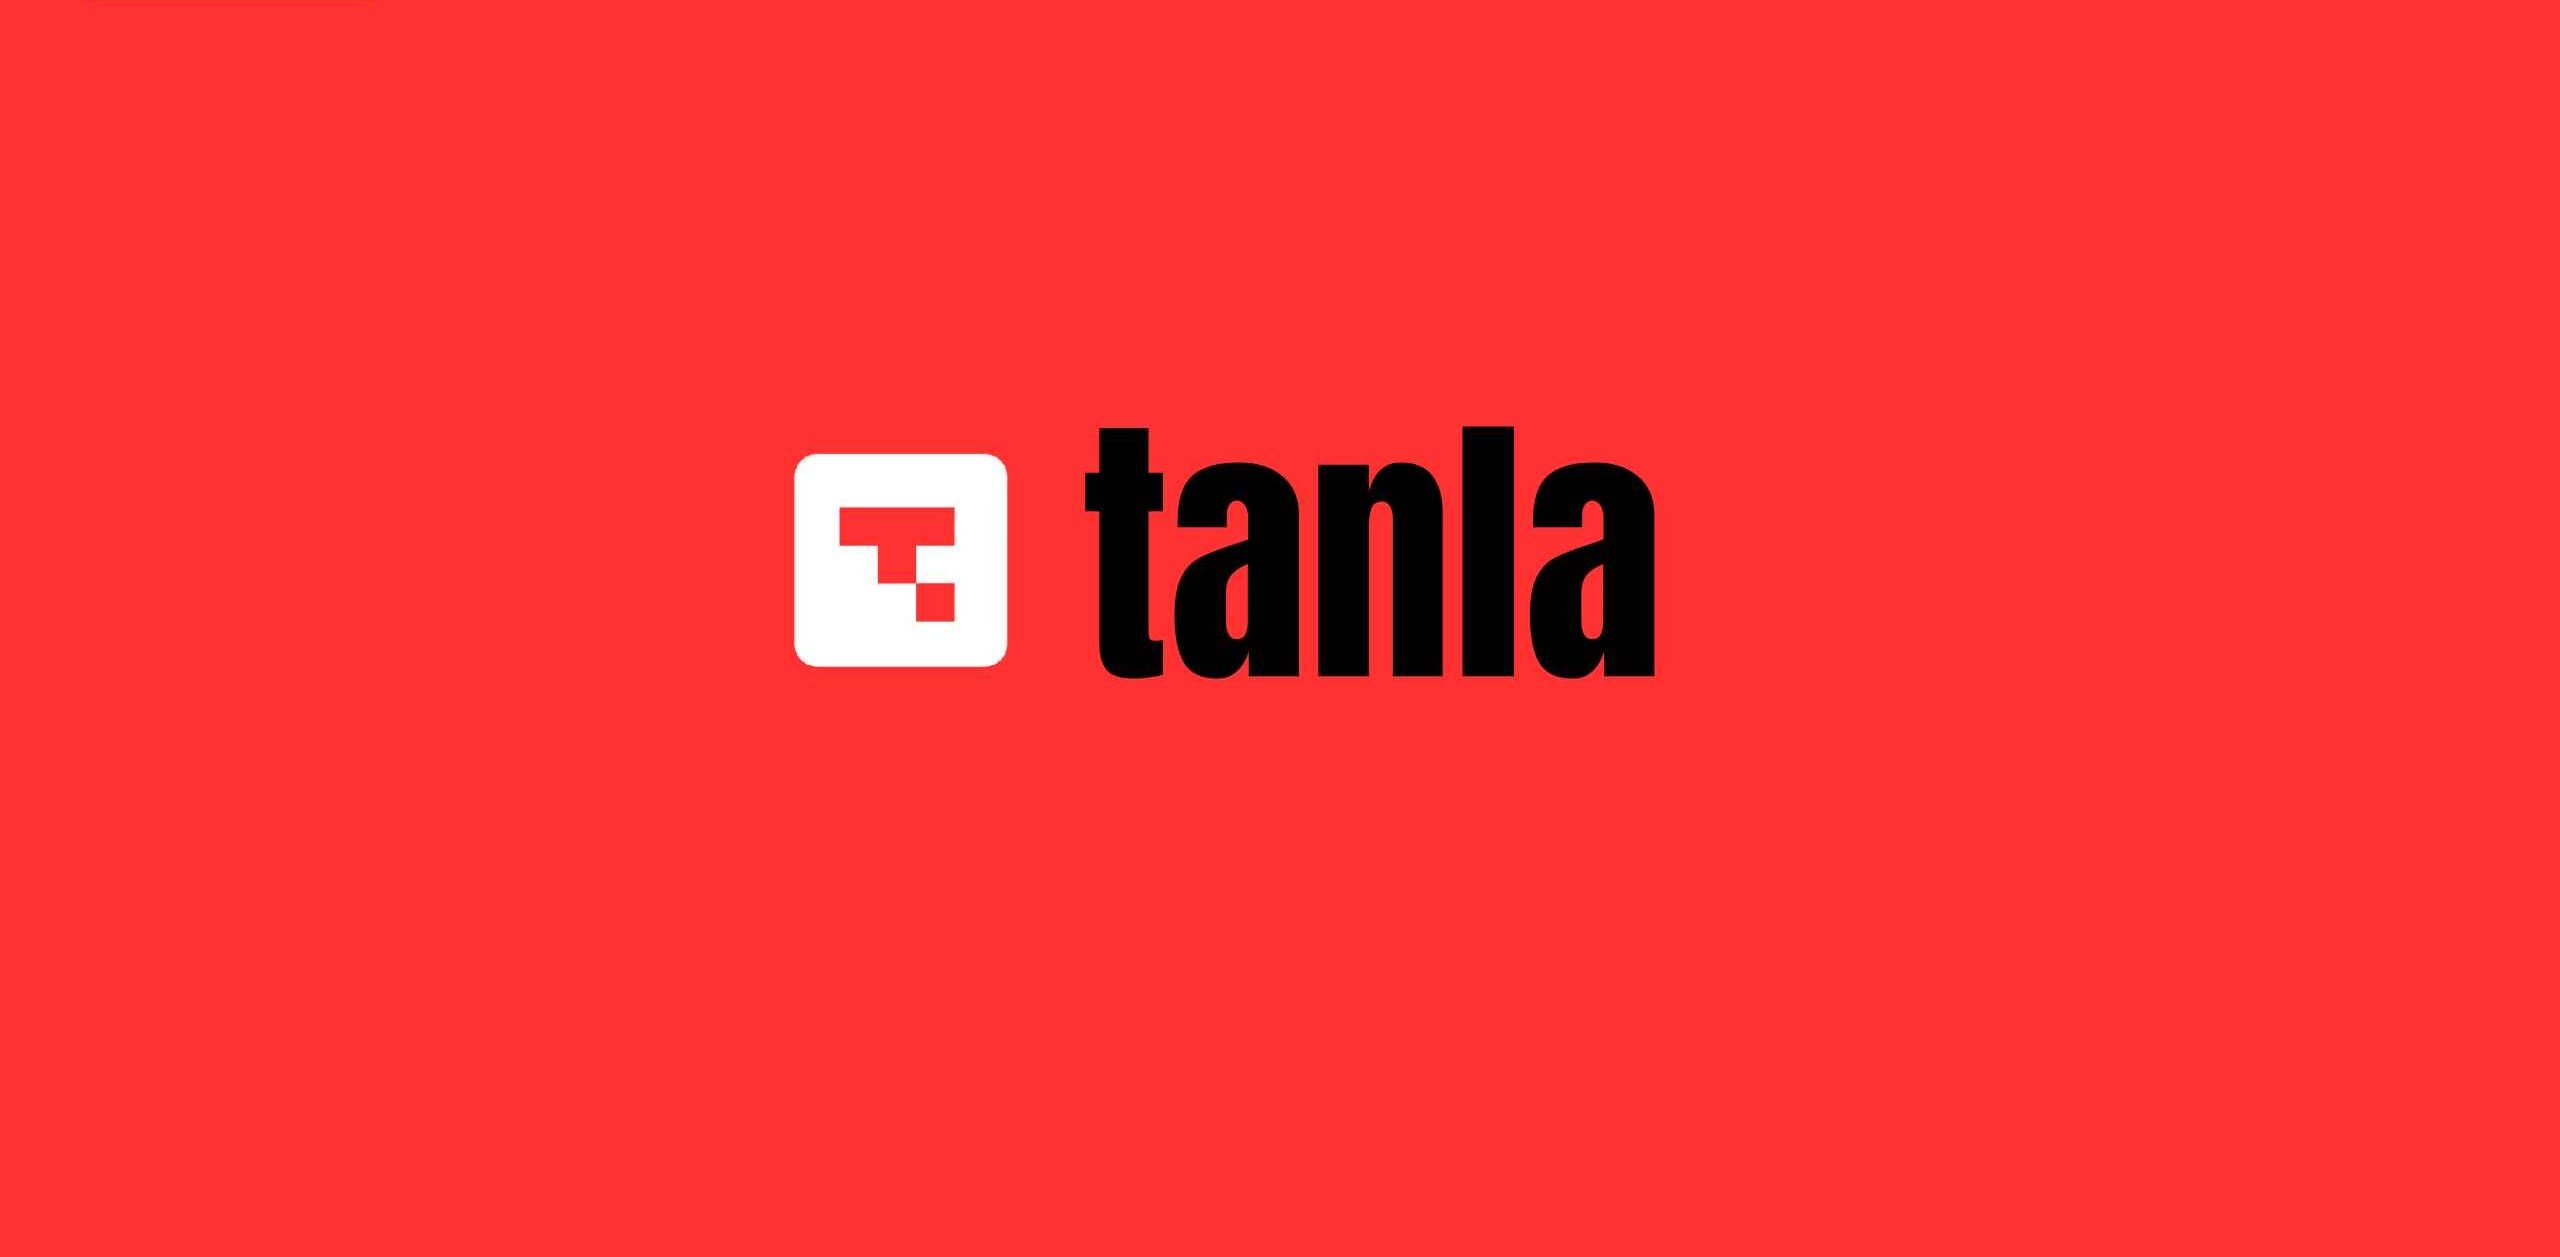 Tanla Share Price Target